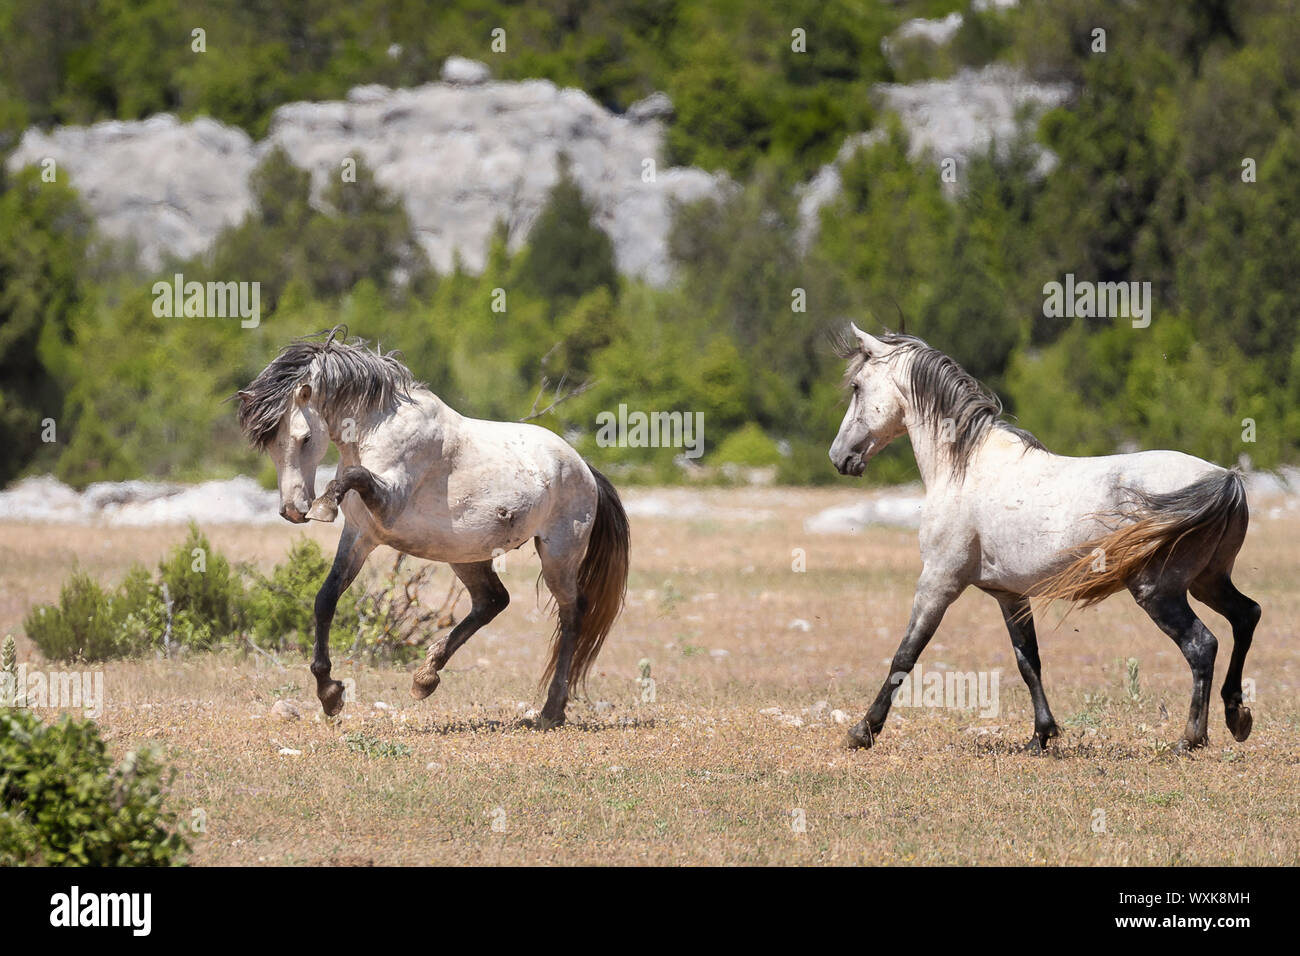 Wild horse, chevaux sauvages. Un étalon gris impressionnant montre le comportement à l'égard d'un rival. La Turquie Banque D'Images